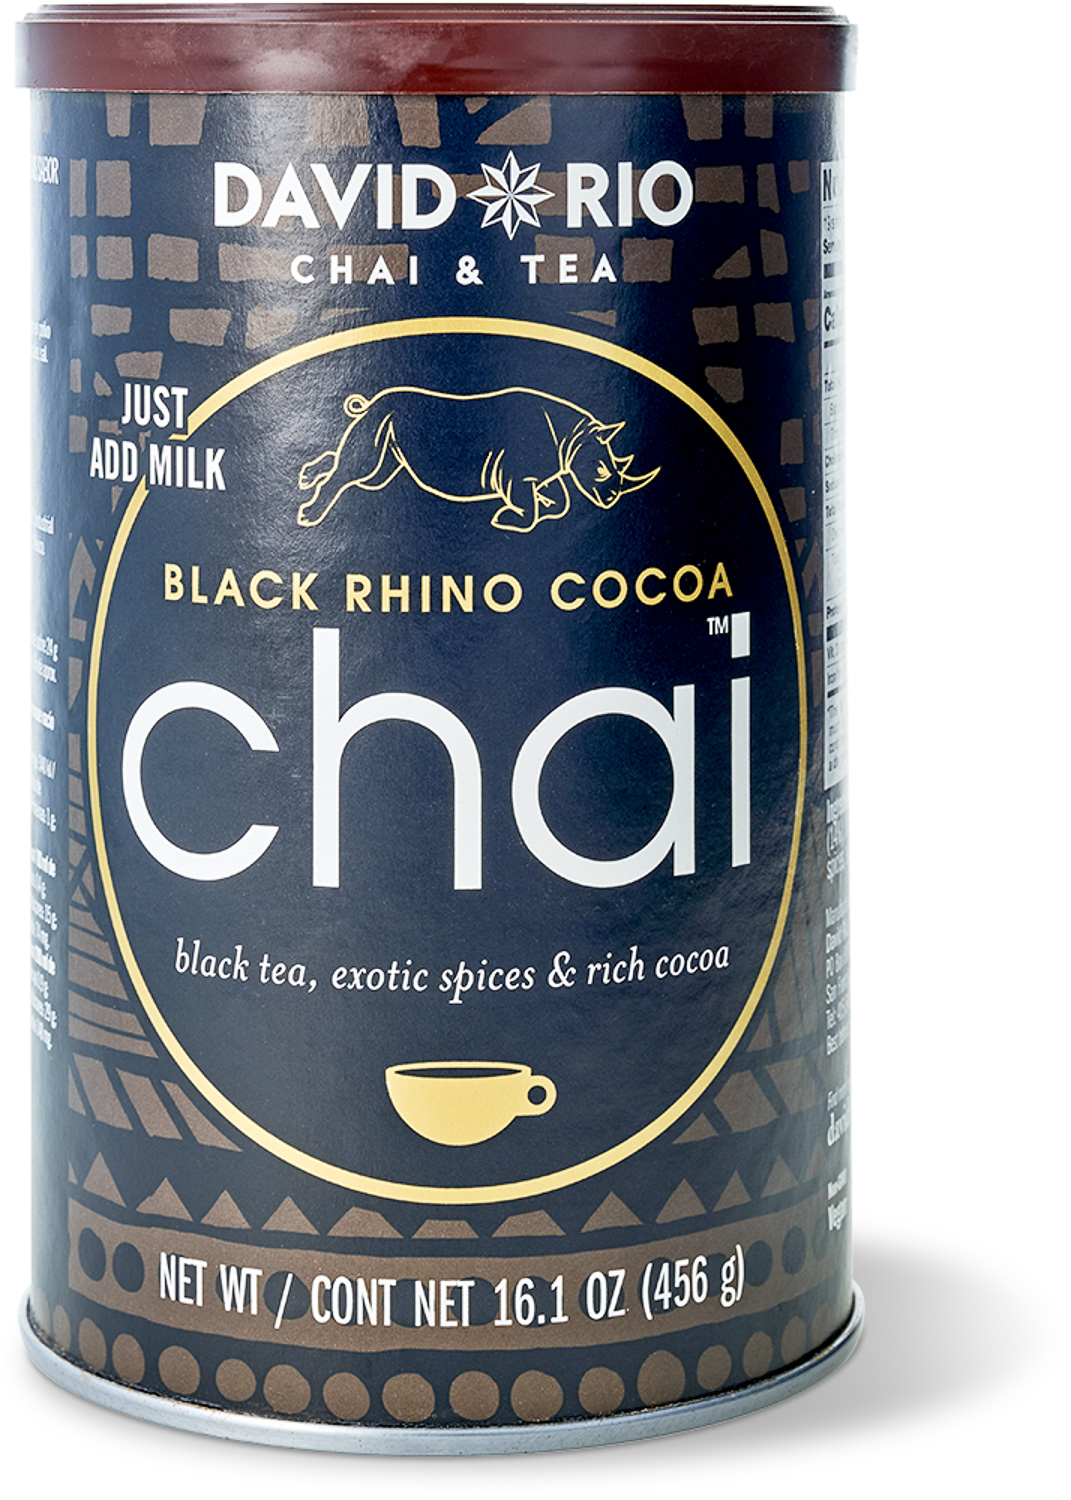 David Rio - Black Rhino Cocoa Chai